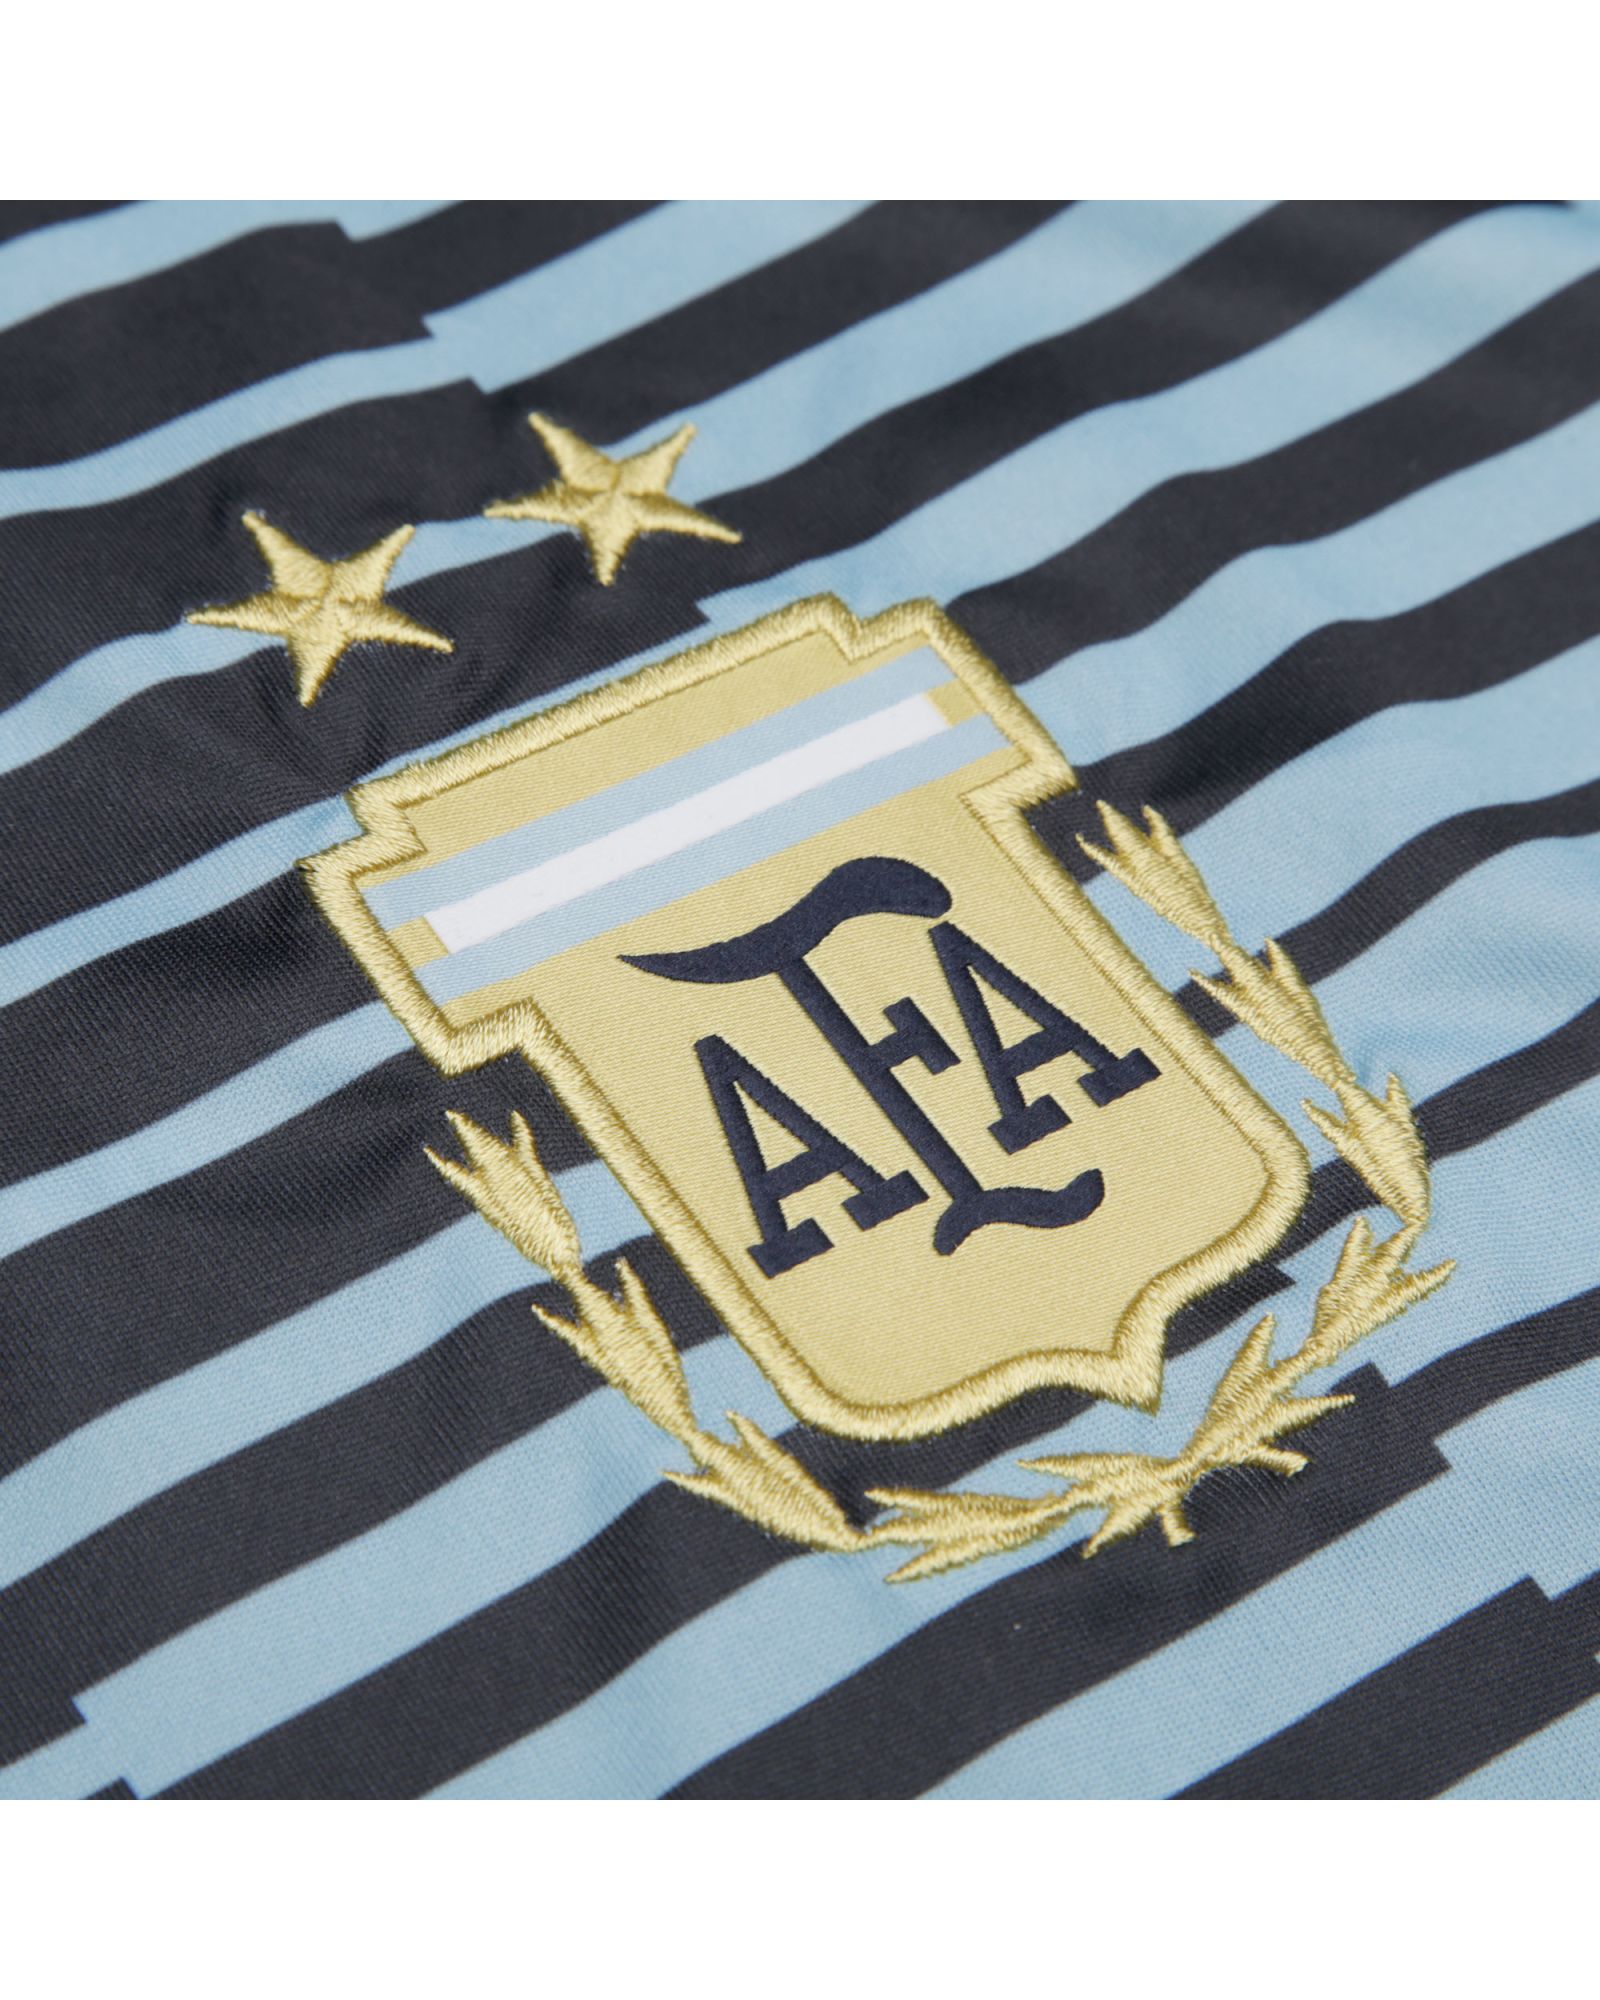 Camiseta adidas Argentina pre-match azul negra